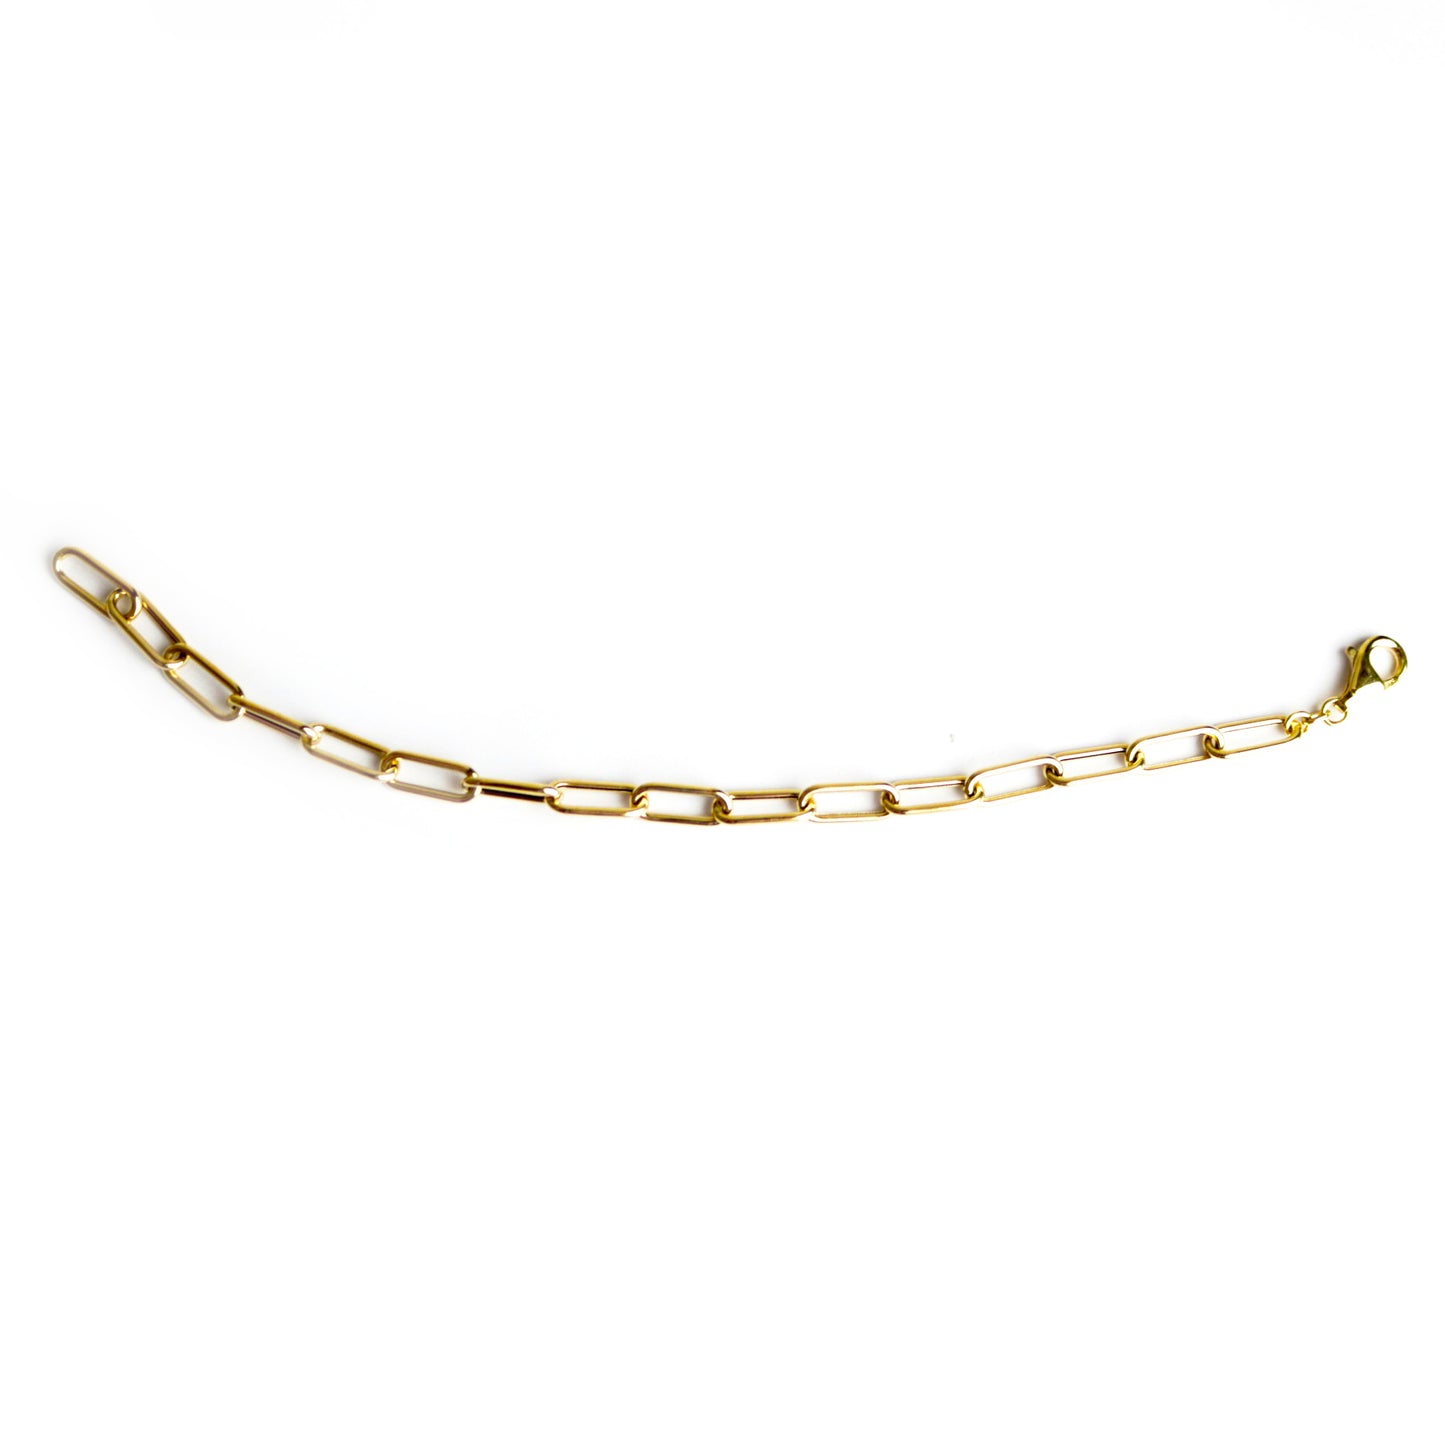 WILHELM MÜLLER - Armkette in Gold mit ovalen Anker Glieder